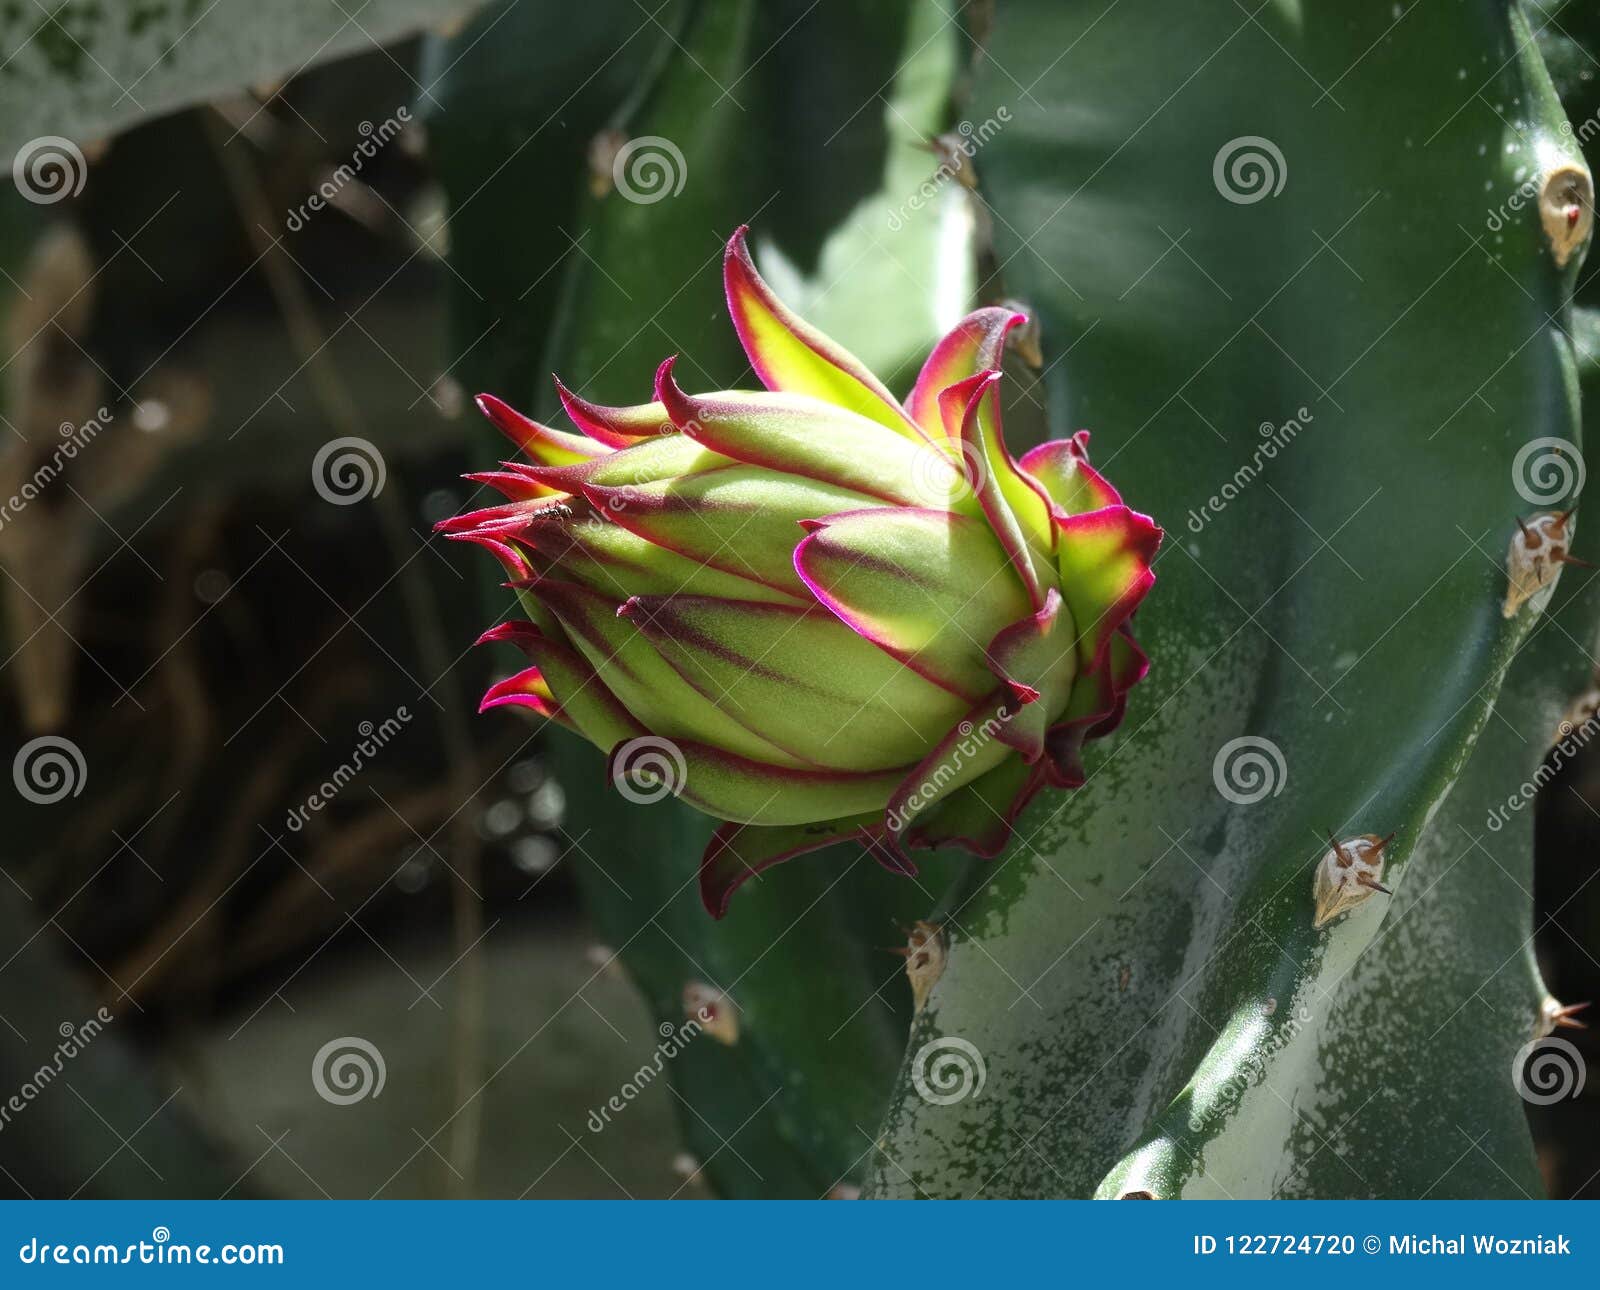 Pitaya flower, dragonfruit stock photo. Image of asian - 122724720